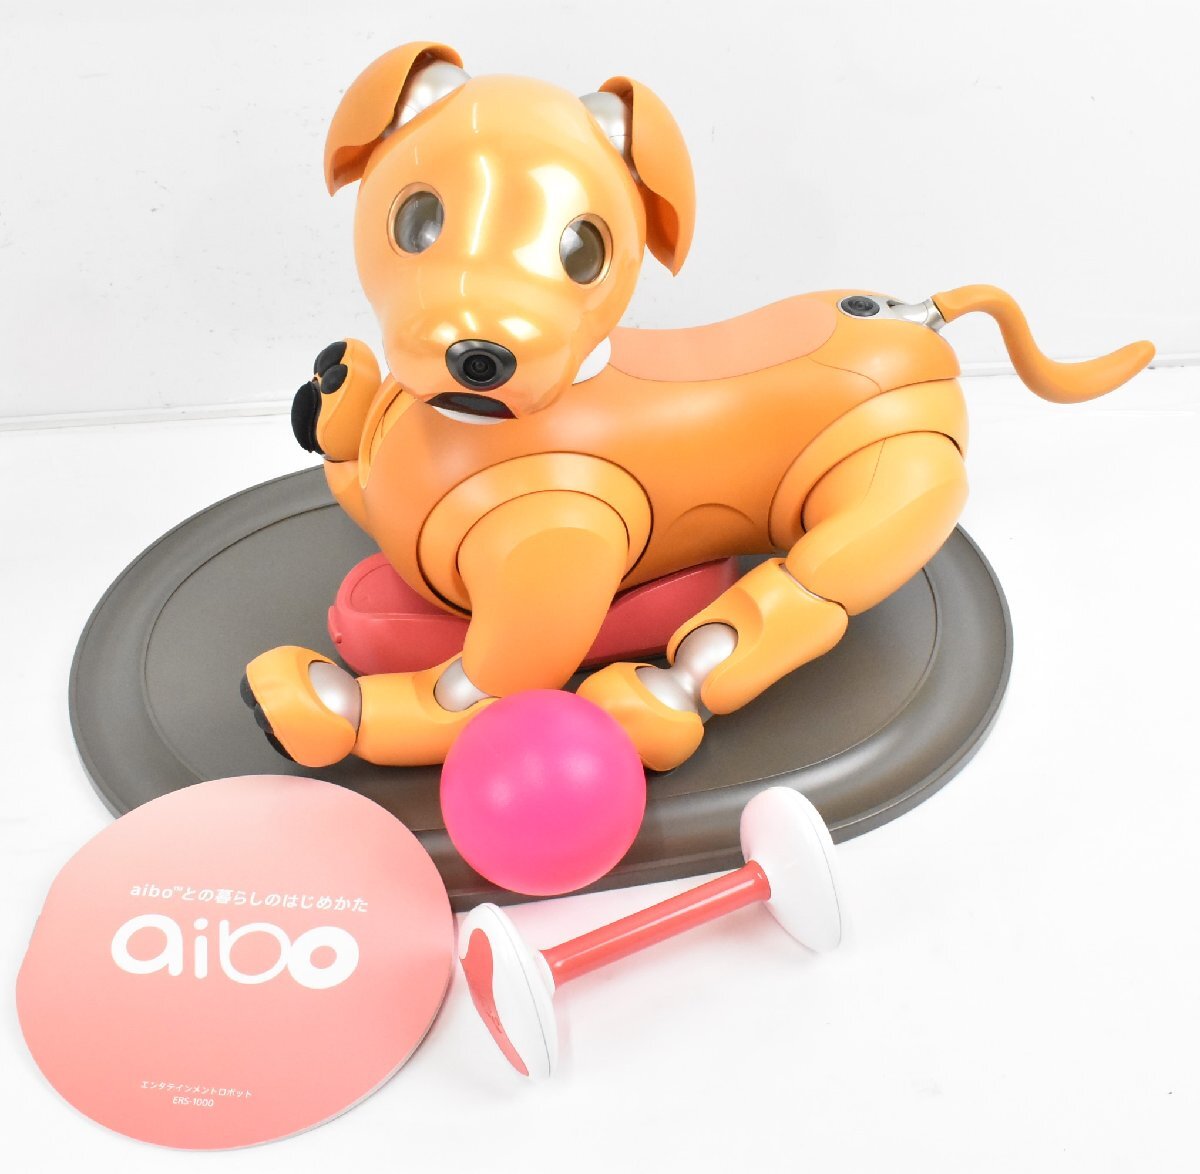  текущее состояние товар Sony Aibo ERS-1000 карамель выпуск ограниченная модель Aibo -n, мяч AIBO собака type робот 70J25281 byebye